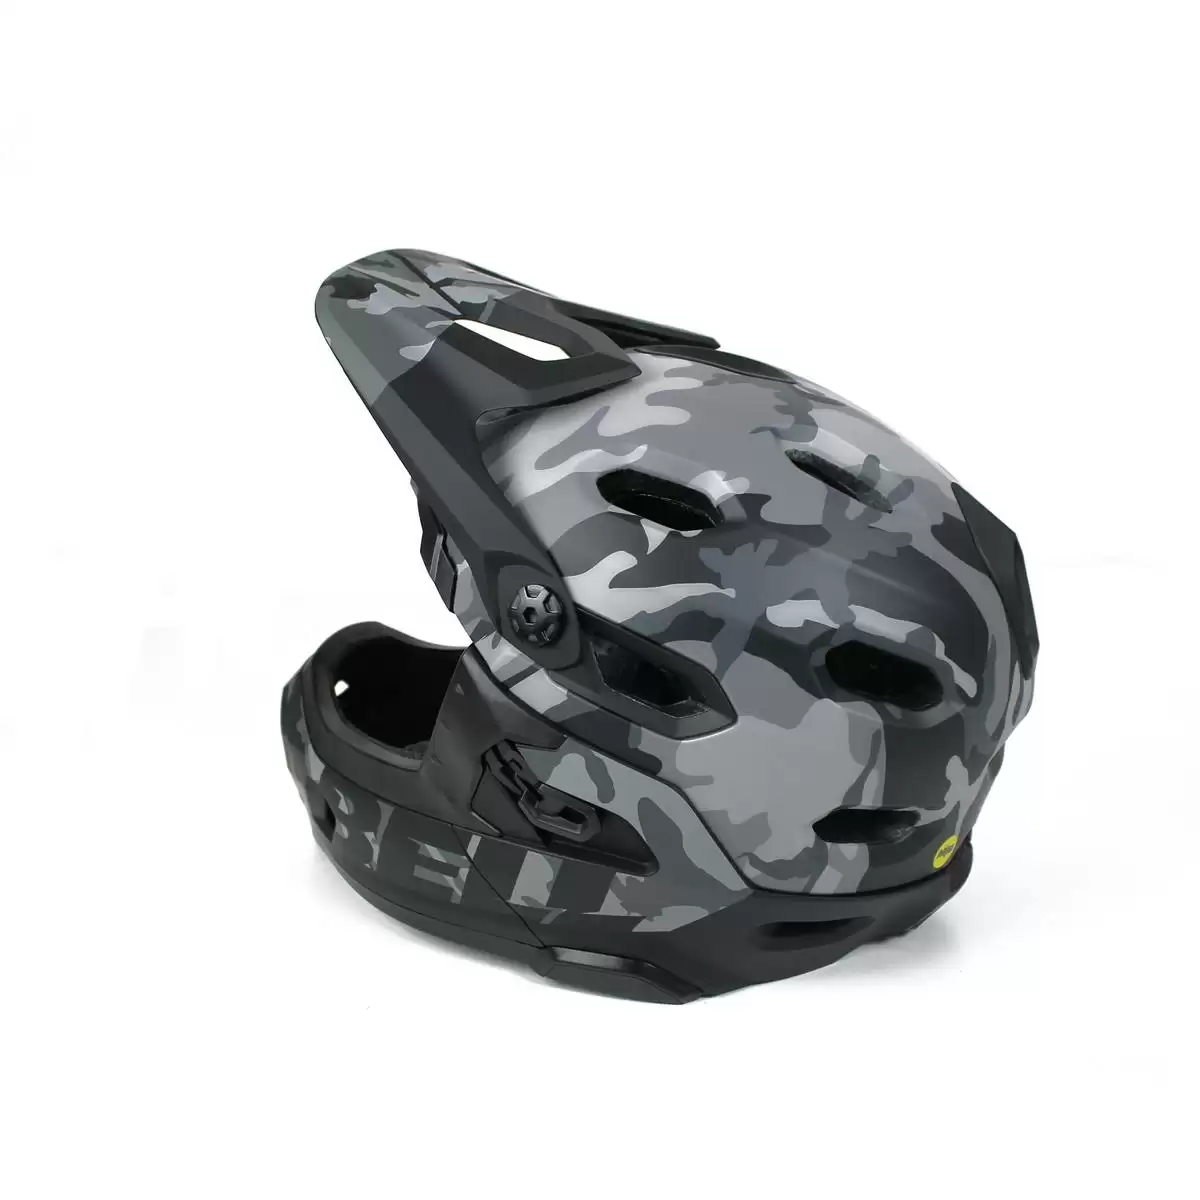 Helmet Super DH MIPS Black Camo Size M (55-59cm) #6